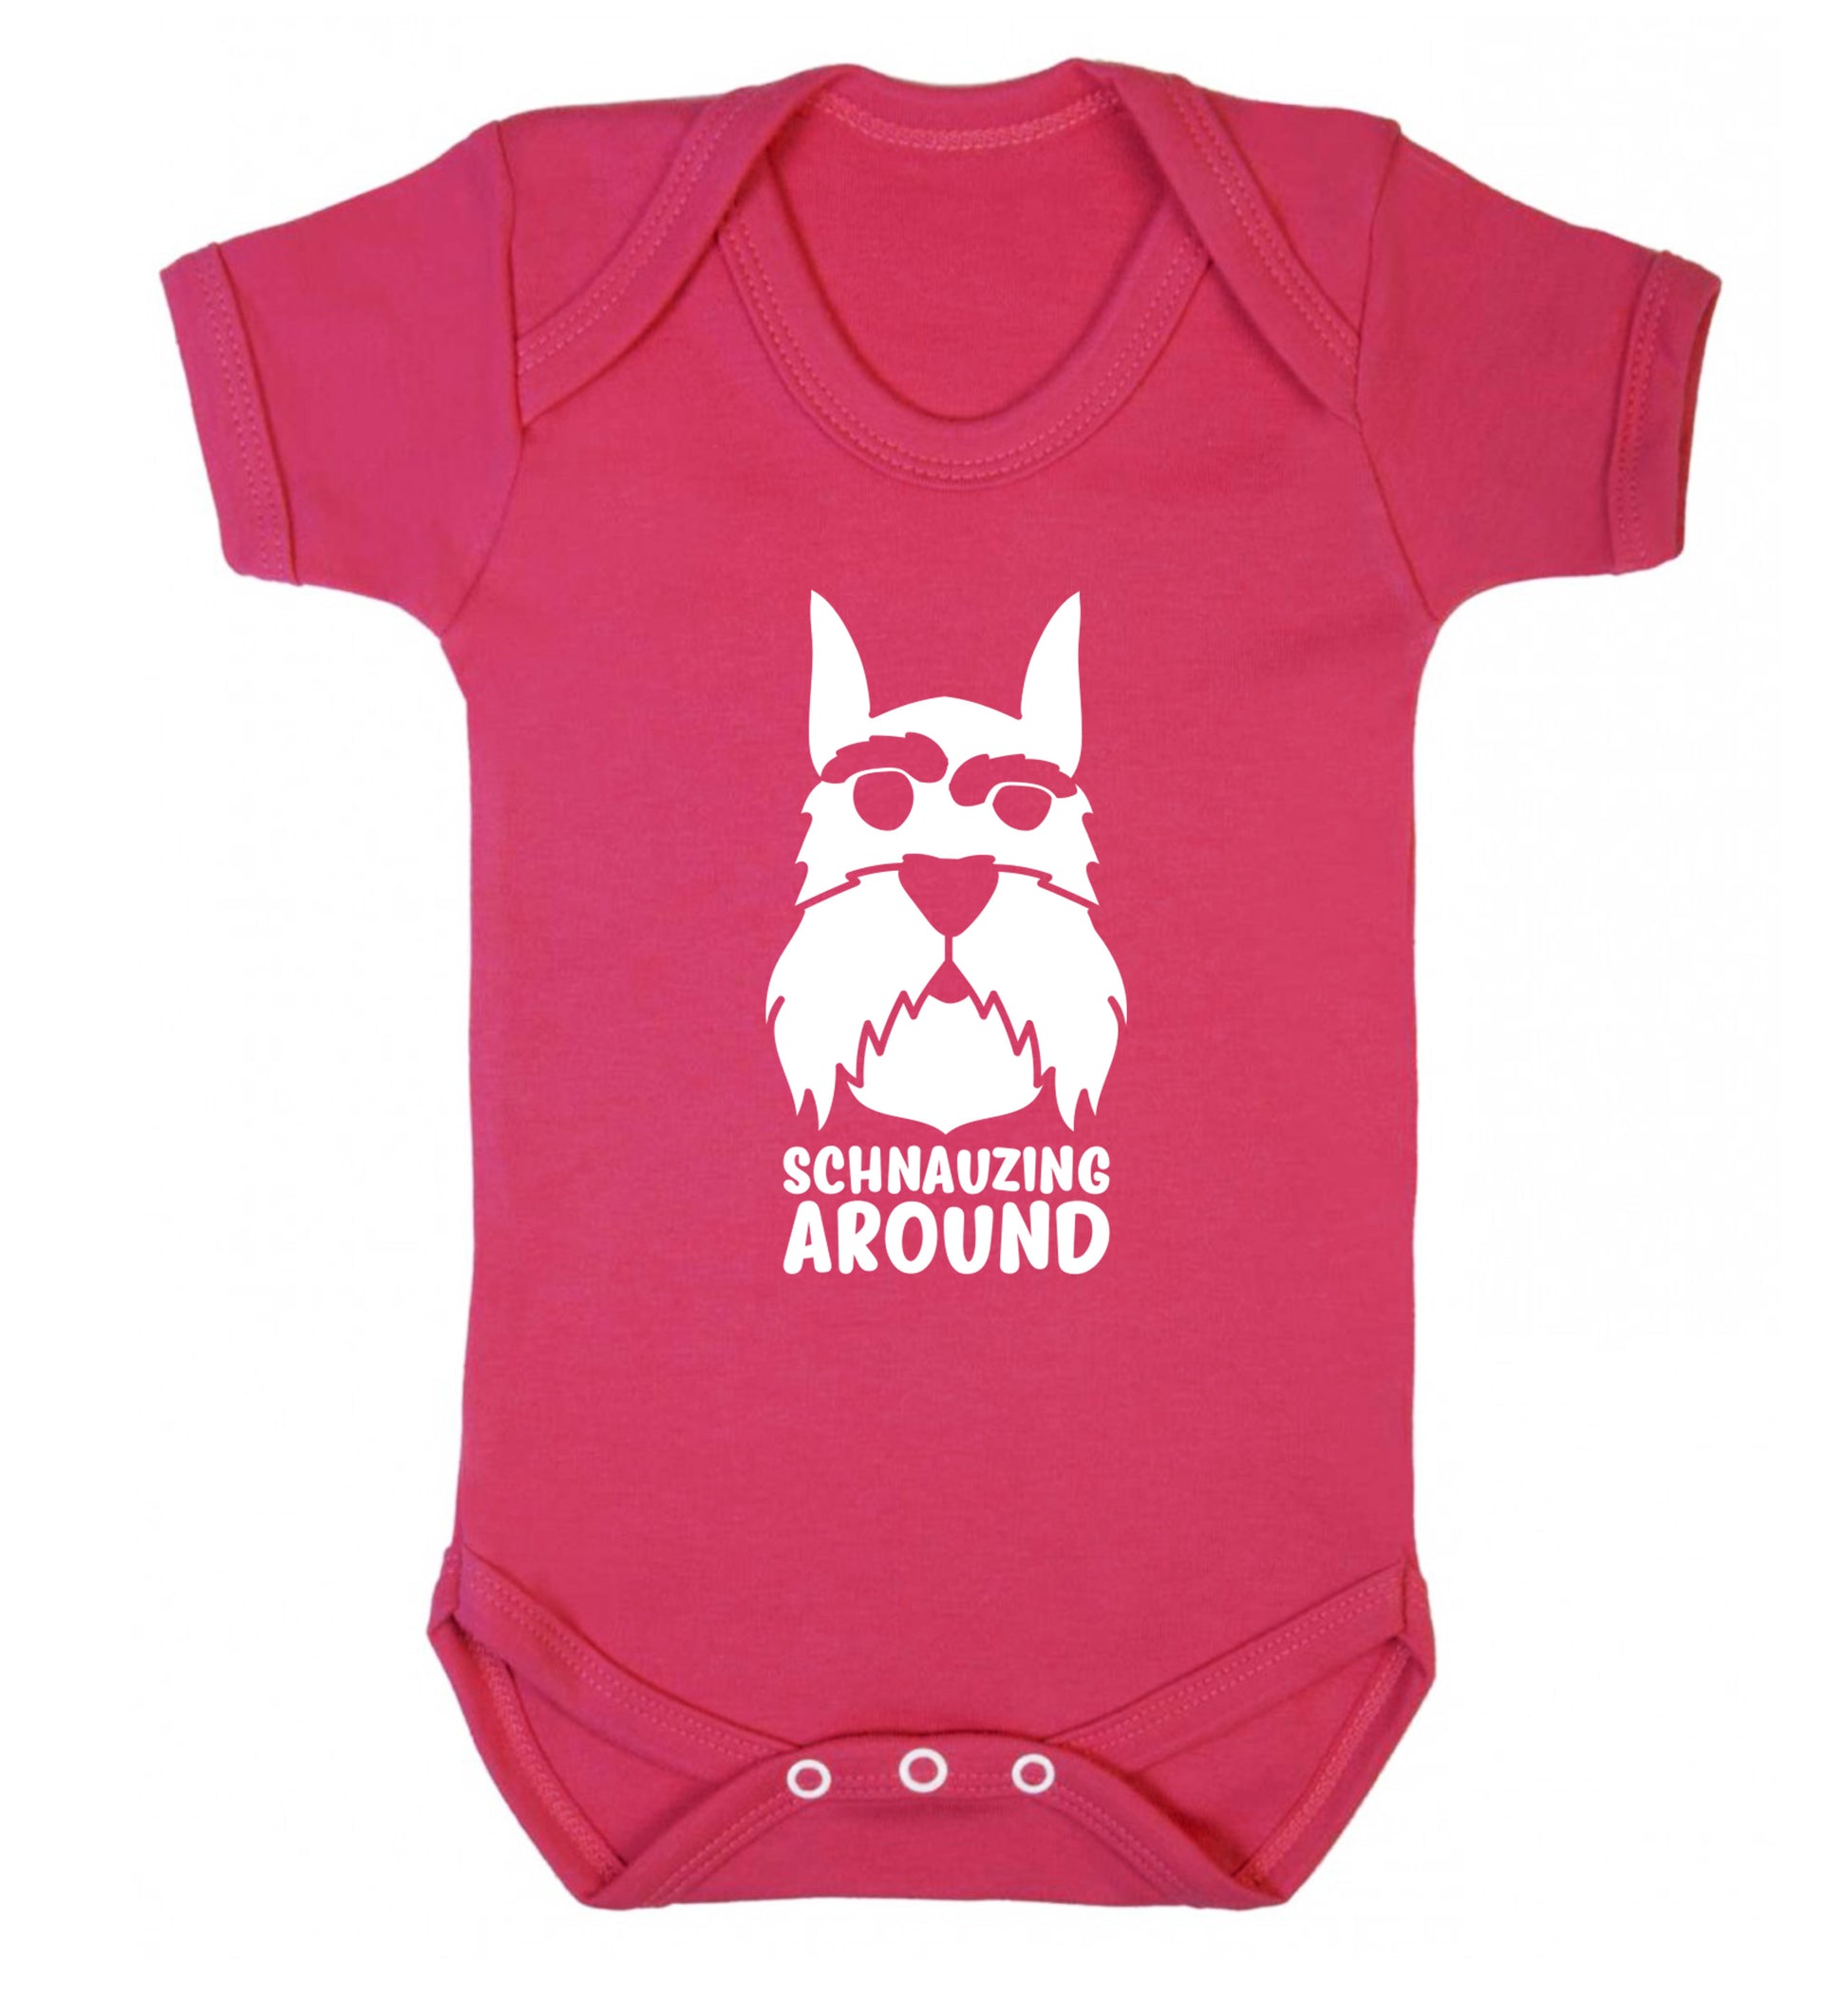 Schnauzing Around Baby Vest dark pink 18-24 months